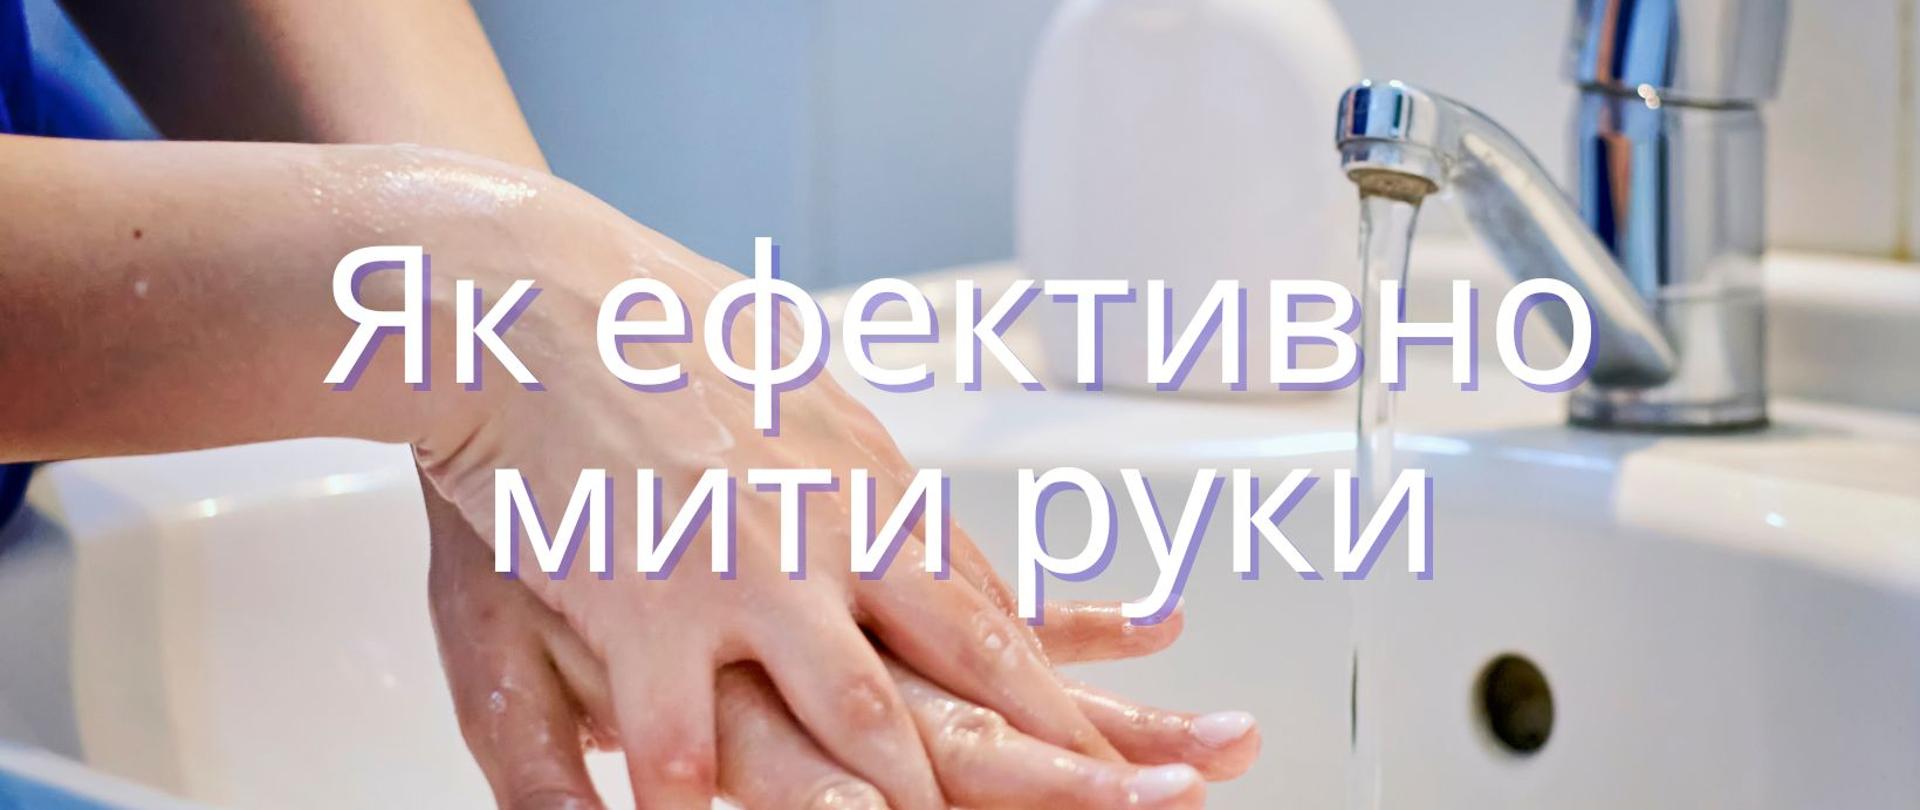 Як ефективно мити руки